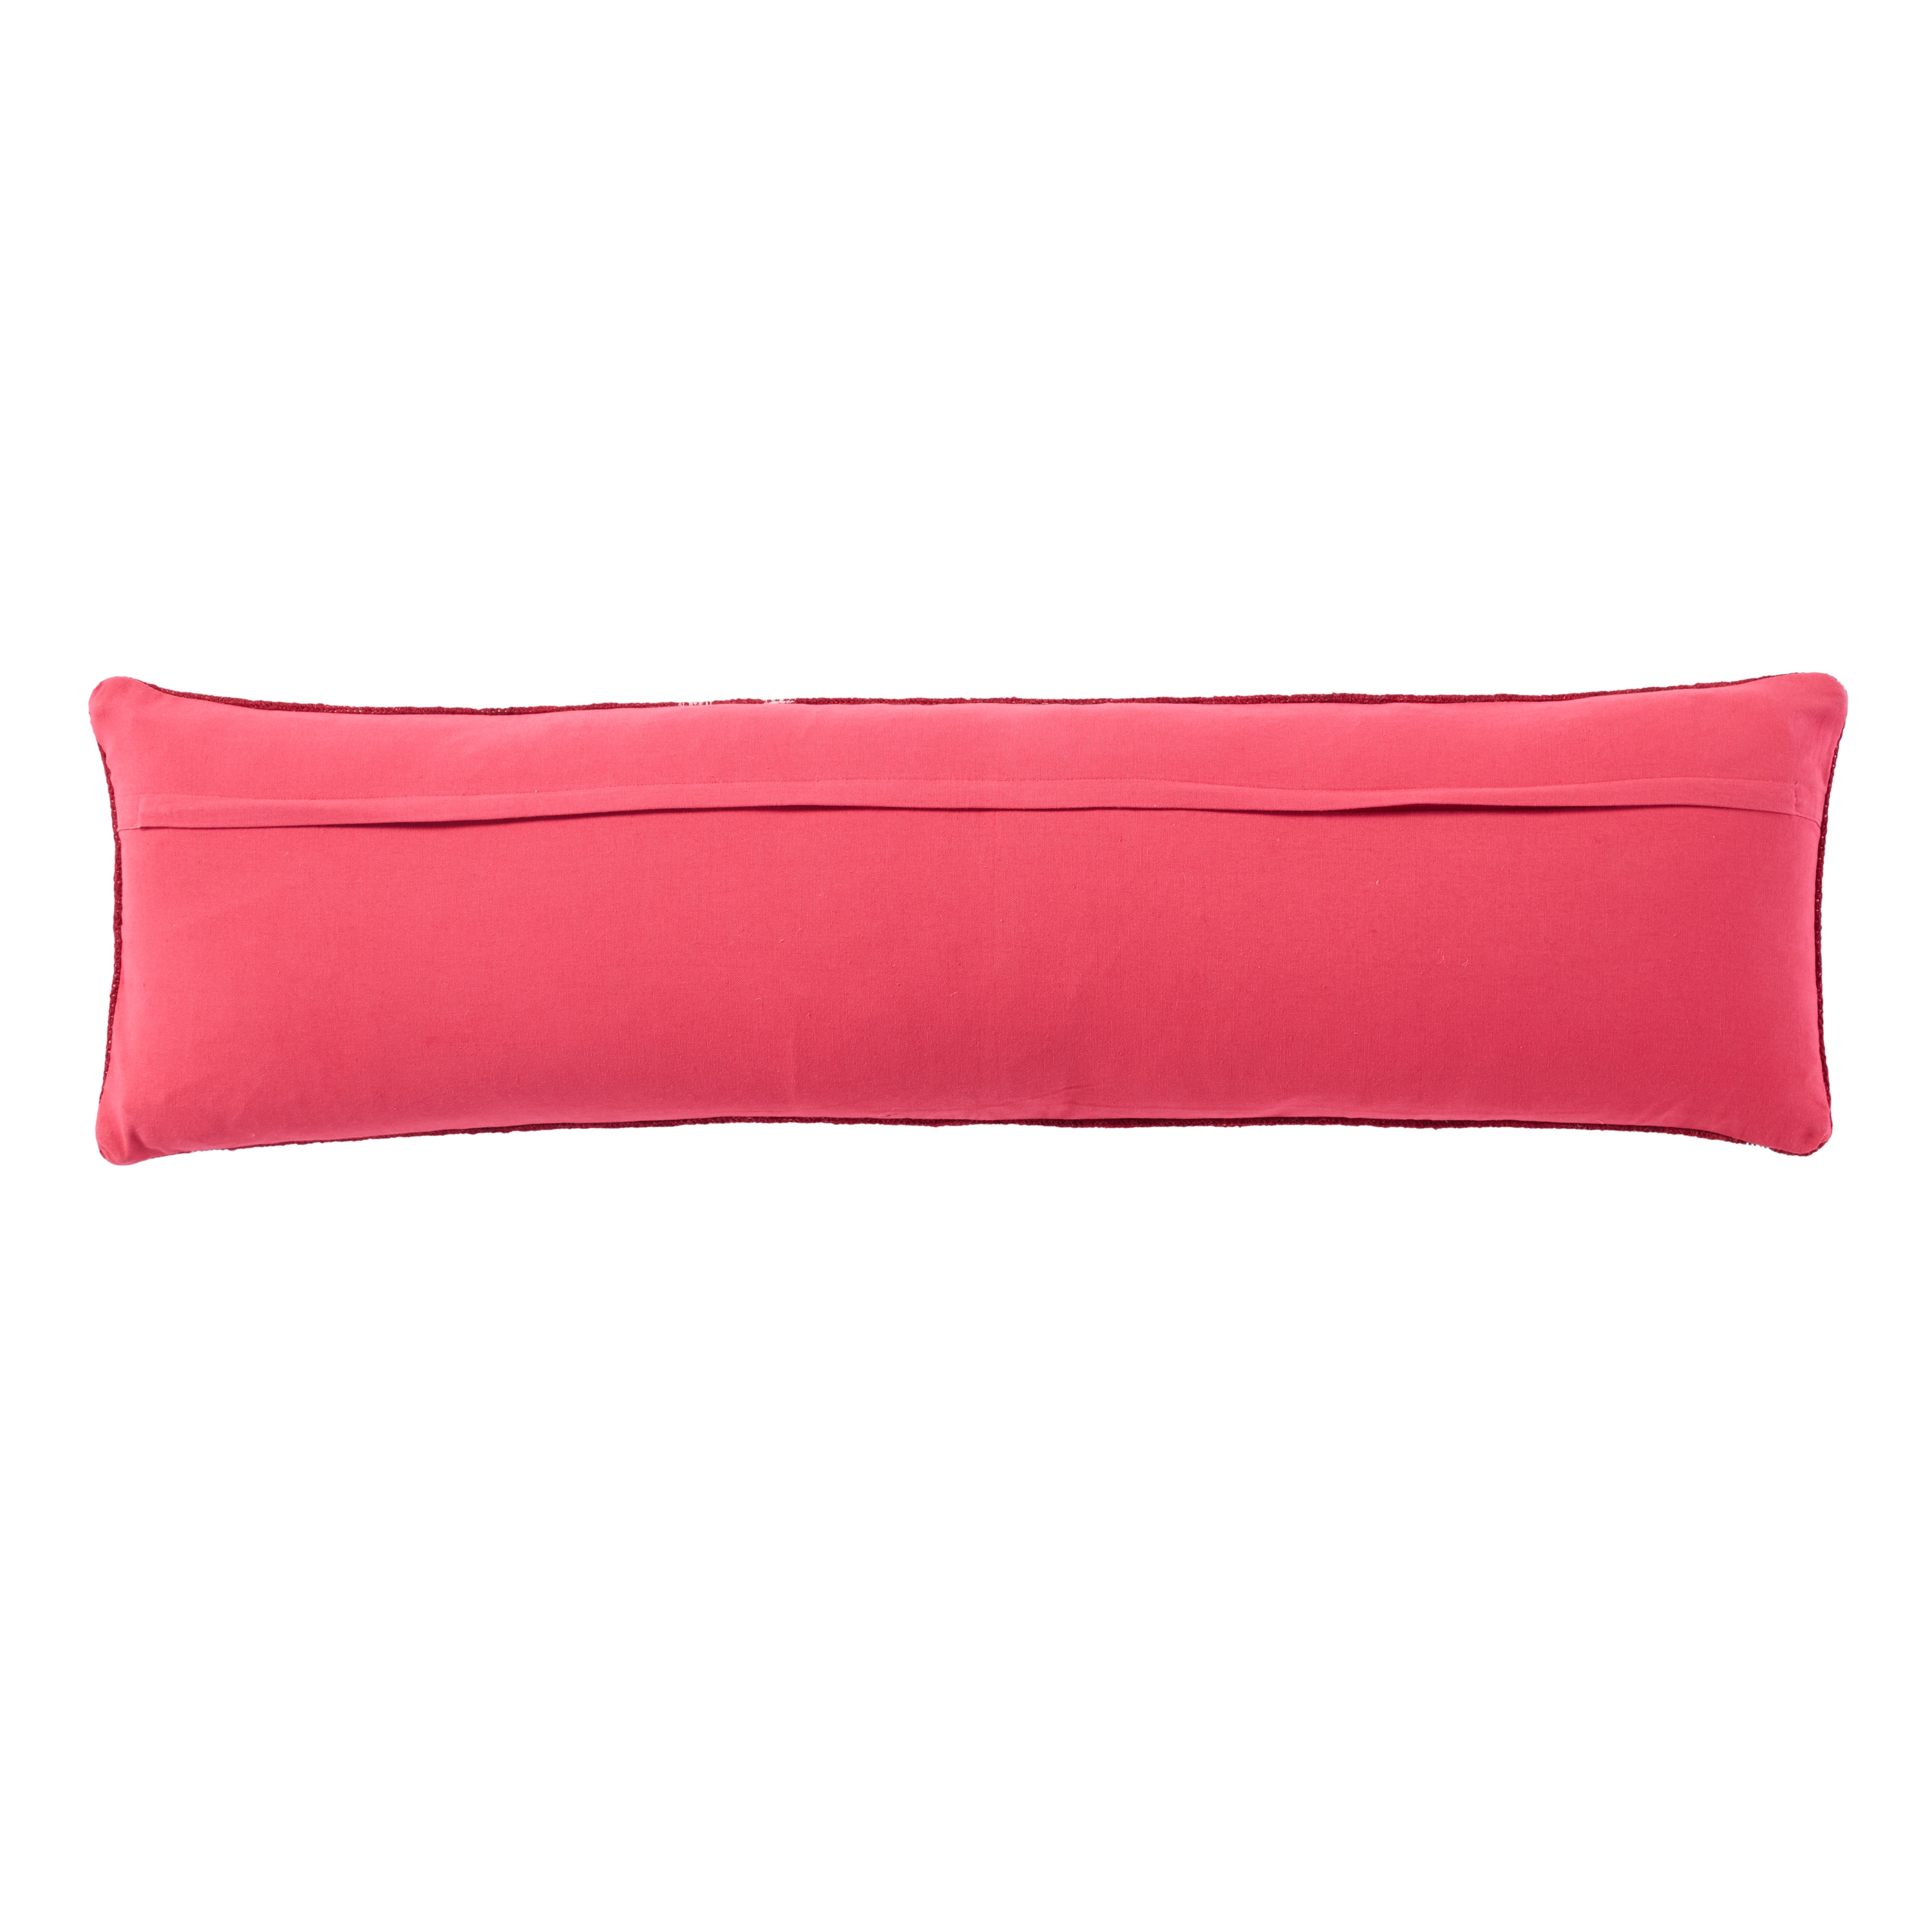 Katara Extra Long Lumbar Pillow, Red, 48" x 13" - Image 1